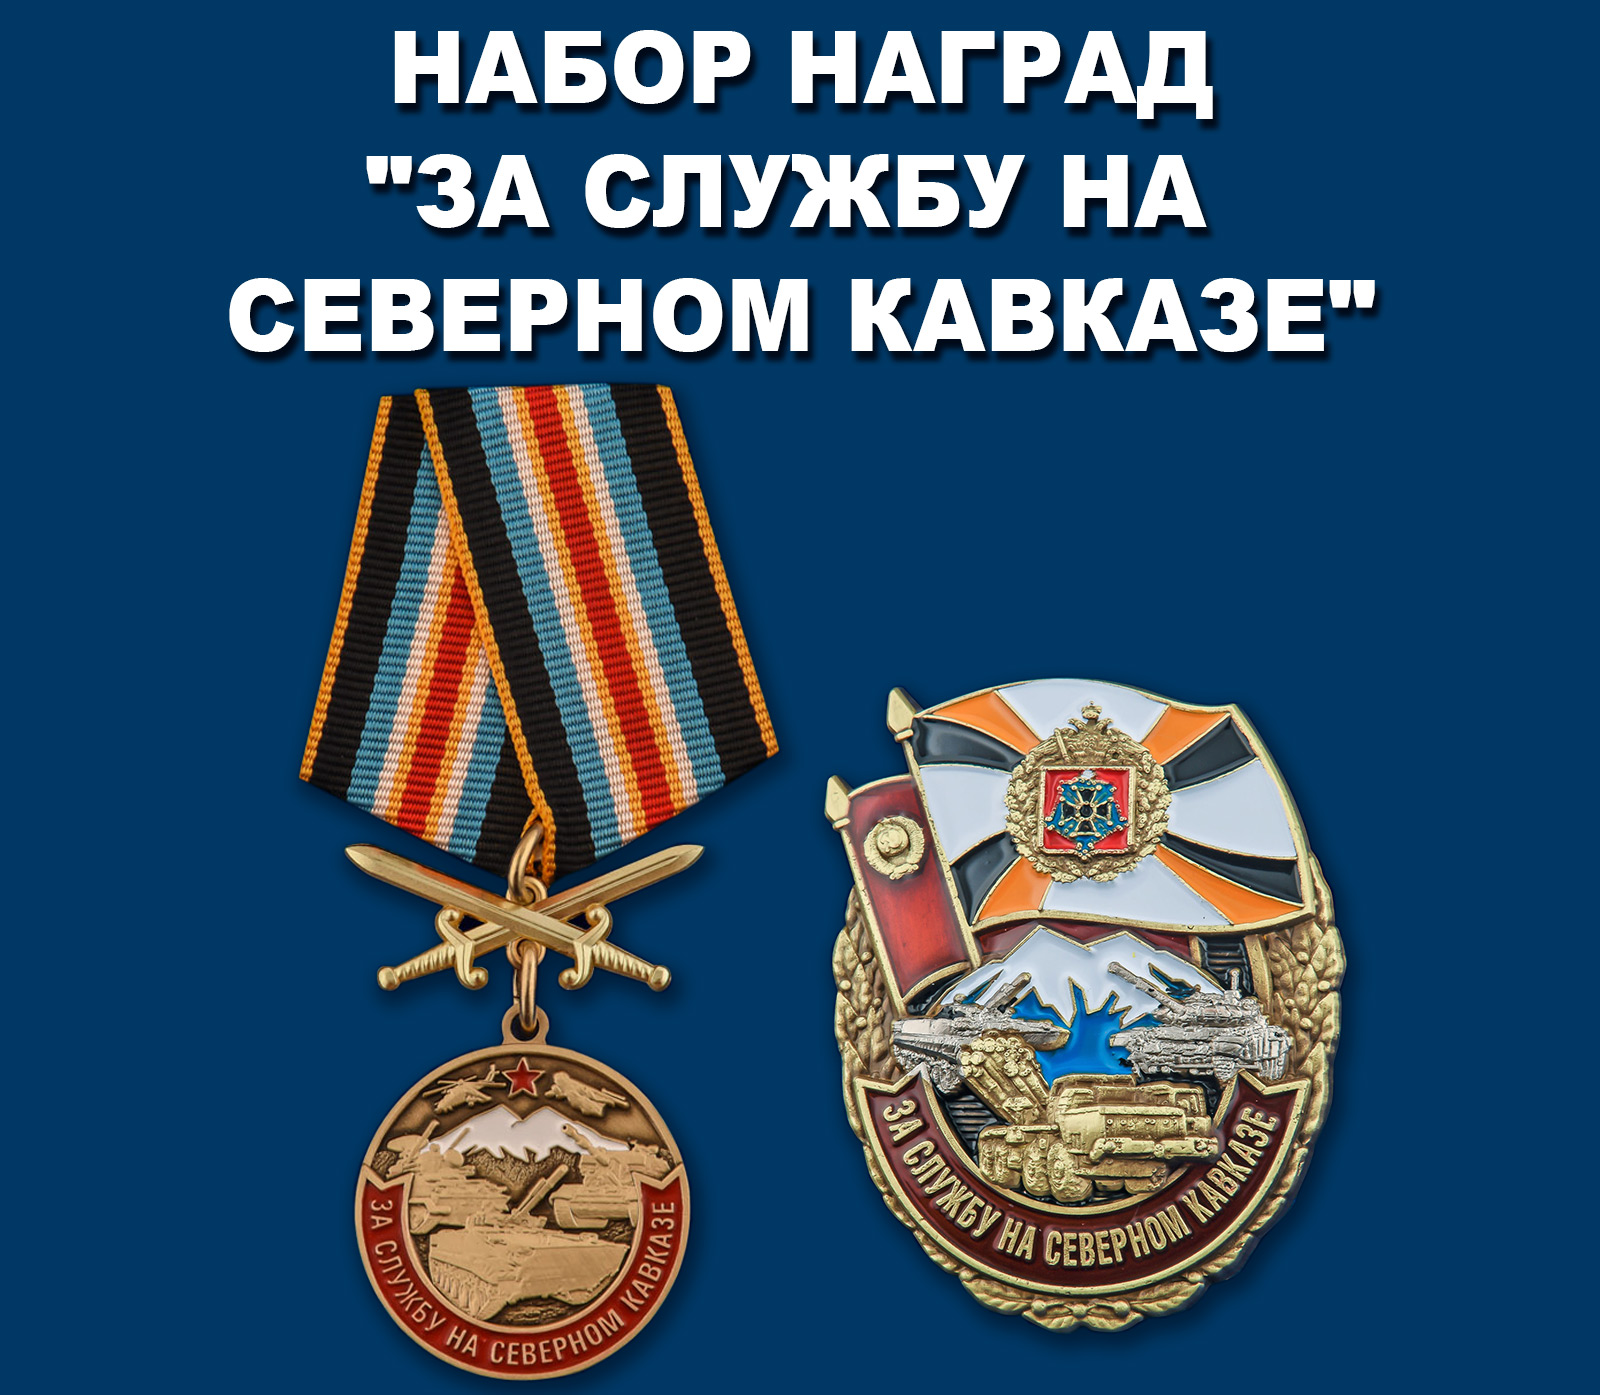 Купить набор наград "За службу на Северном Кавказе" 